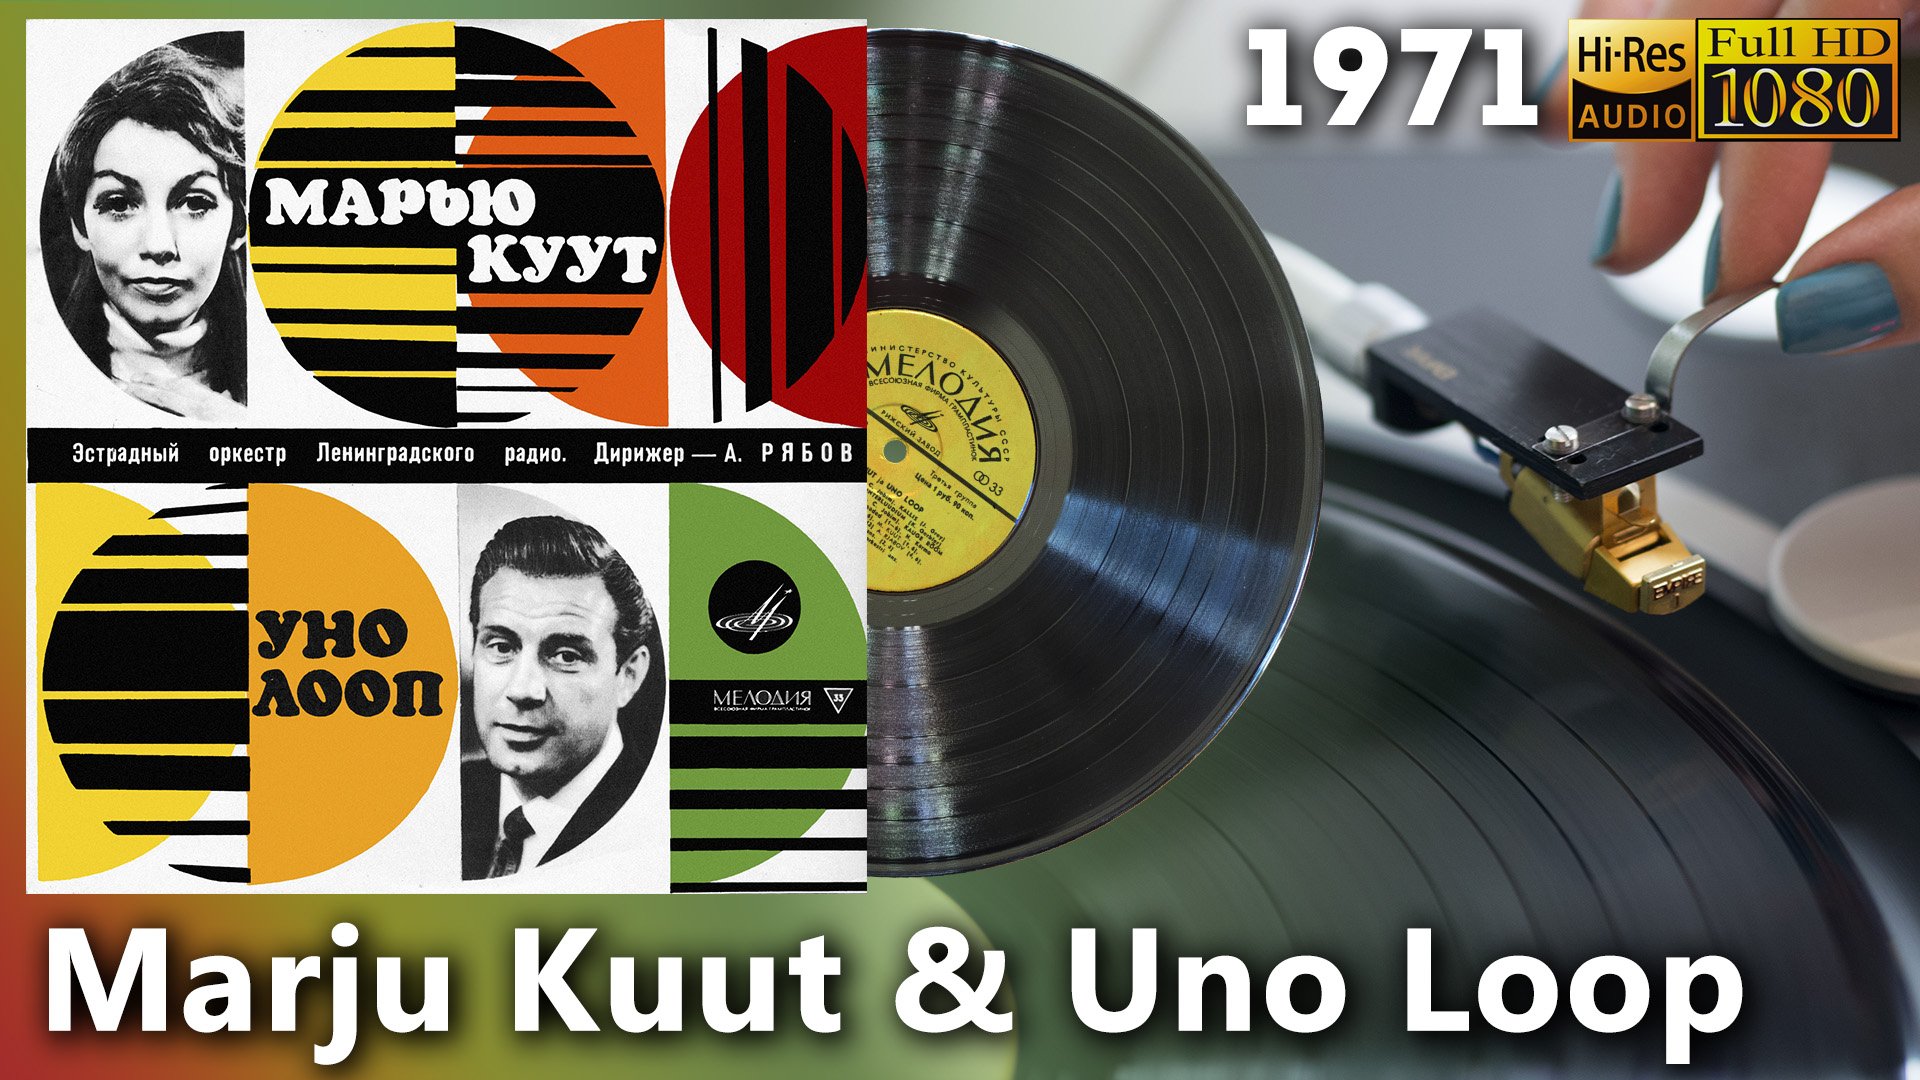 Marju Kuut & Uno Loop, 1971, Bossa Nova, Easy Listening. Estonian music, Vinyl video 4K, 24bit/96kHz